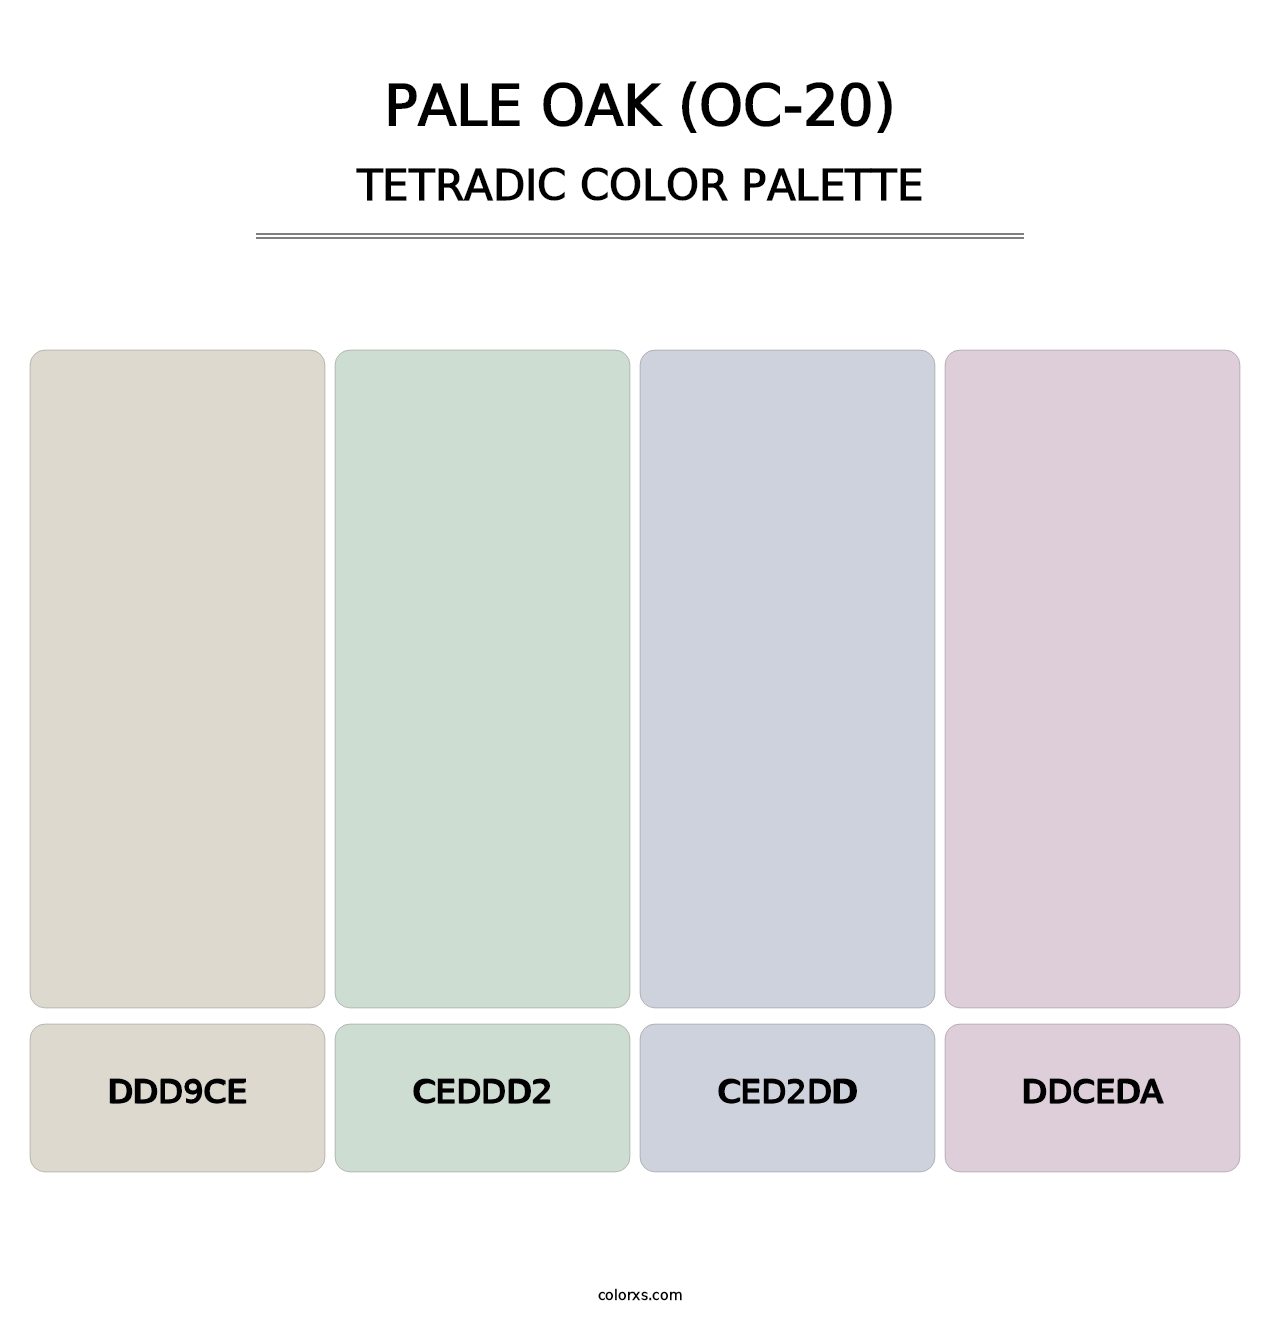 Pale Oak (OC-20) - Tetradic Color Palette